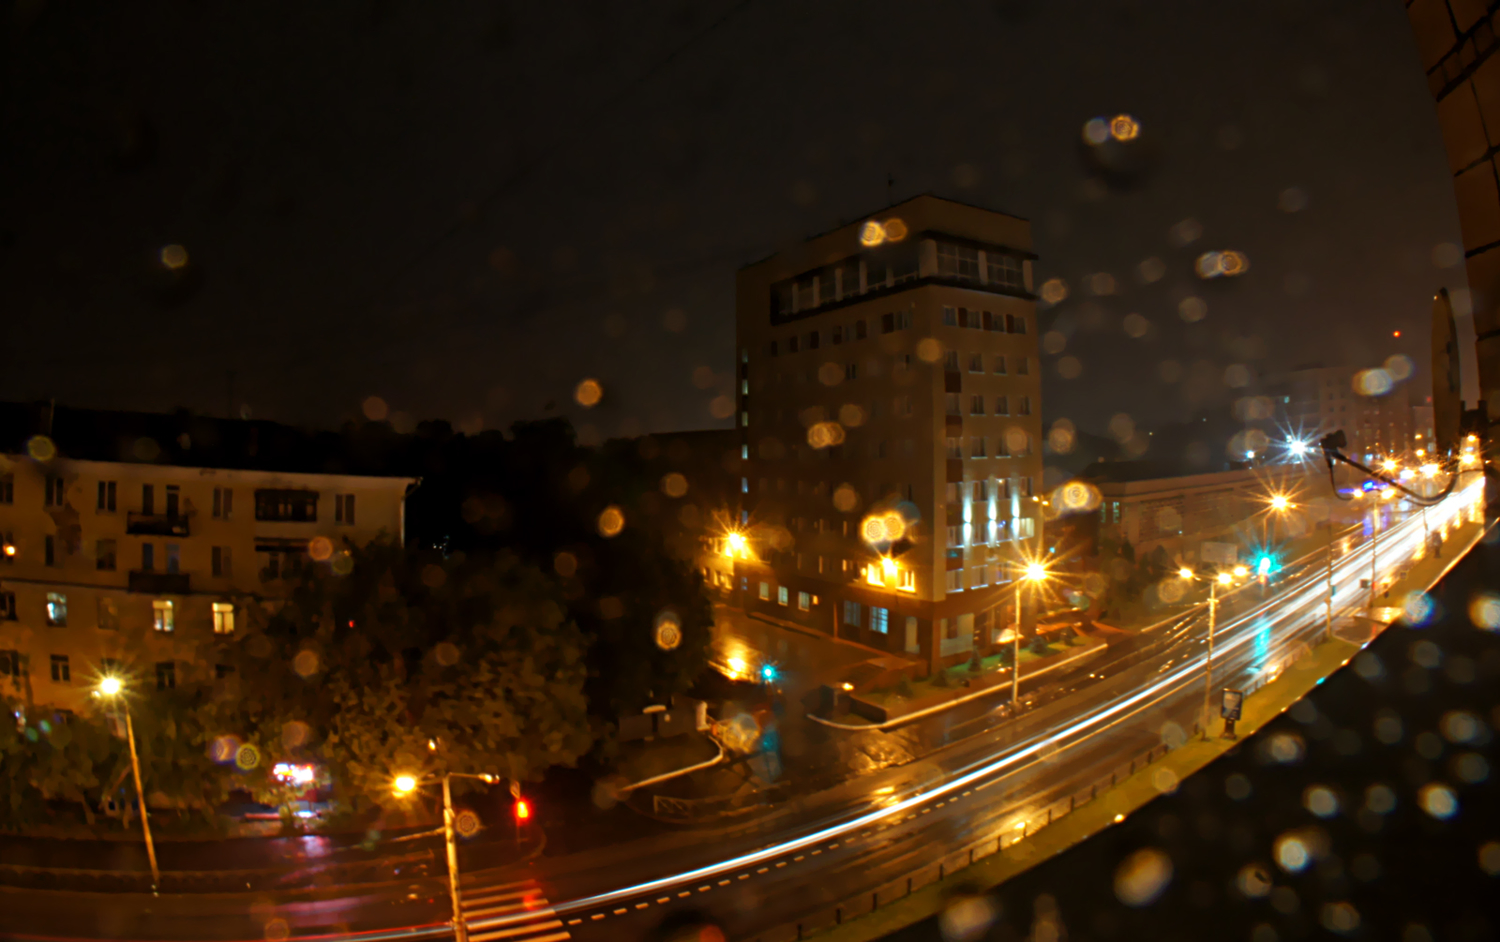 Улица из моего окна (дождь)